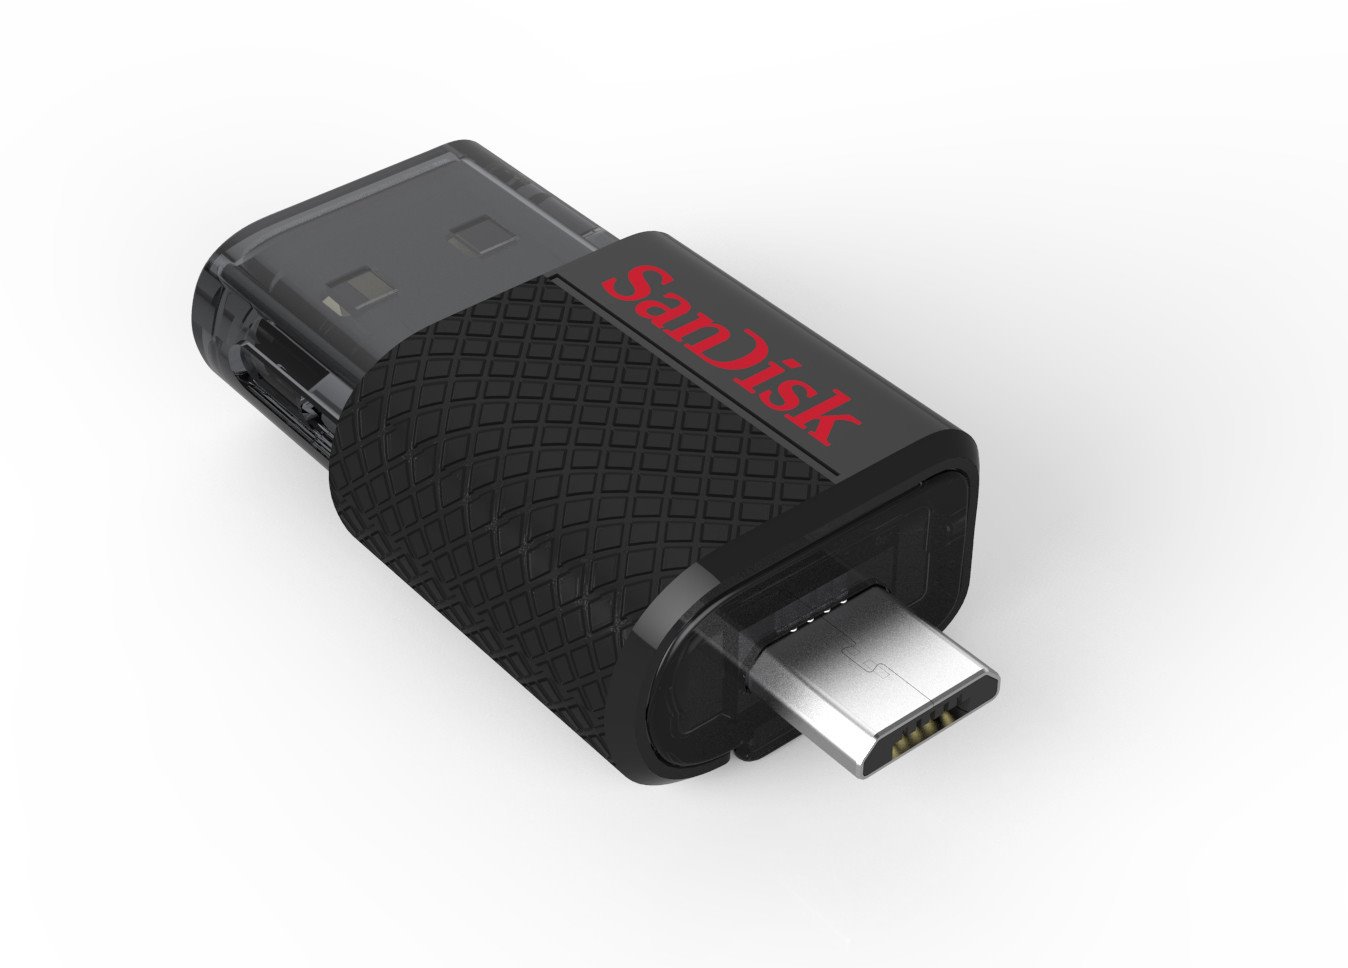 SanDisk Ultra Dual 32 GB USB 3.0, USB Type C Flash Drive